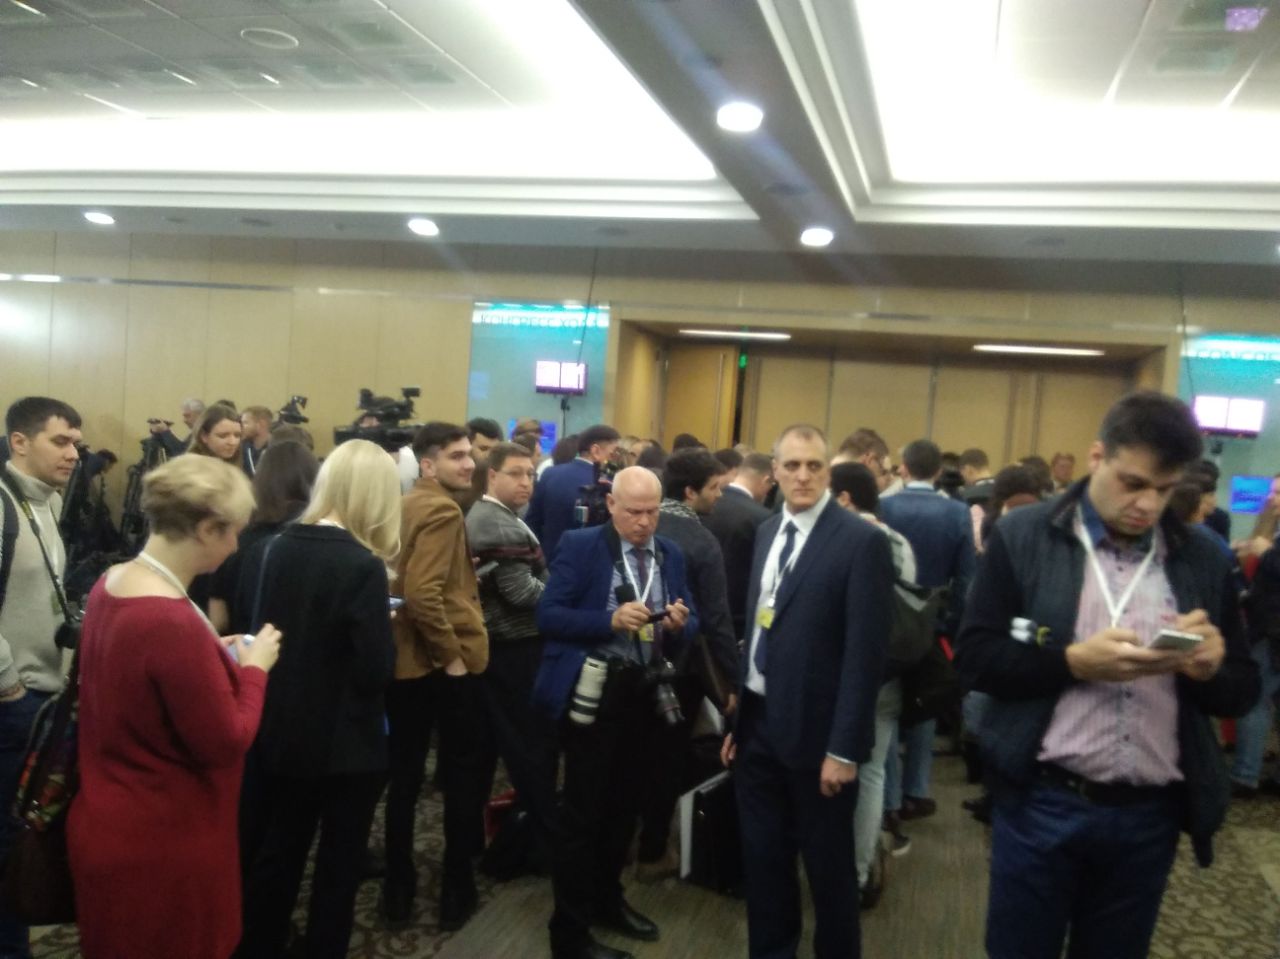 Chelny-biz.ru у Путина: журналисты со всего мира собираются на пресс-конференцию. Первые фото